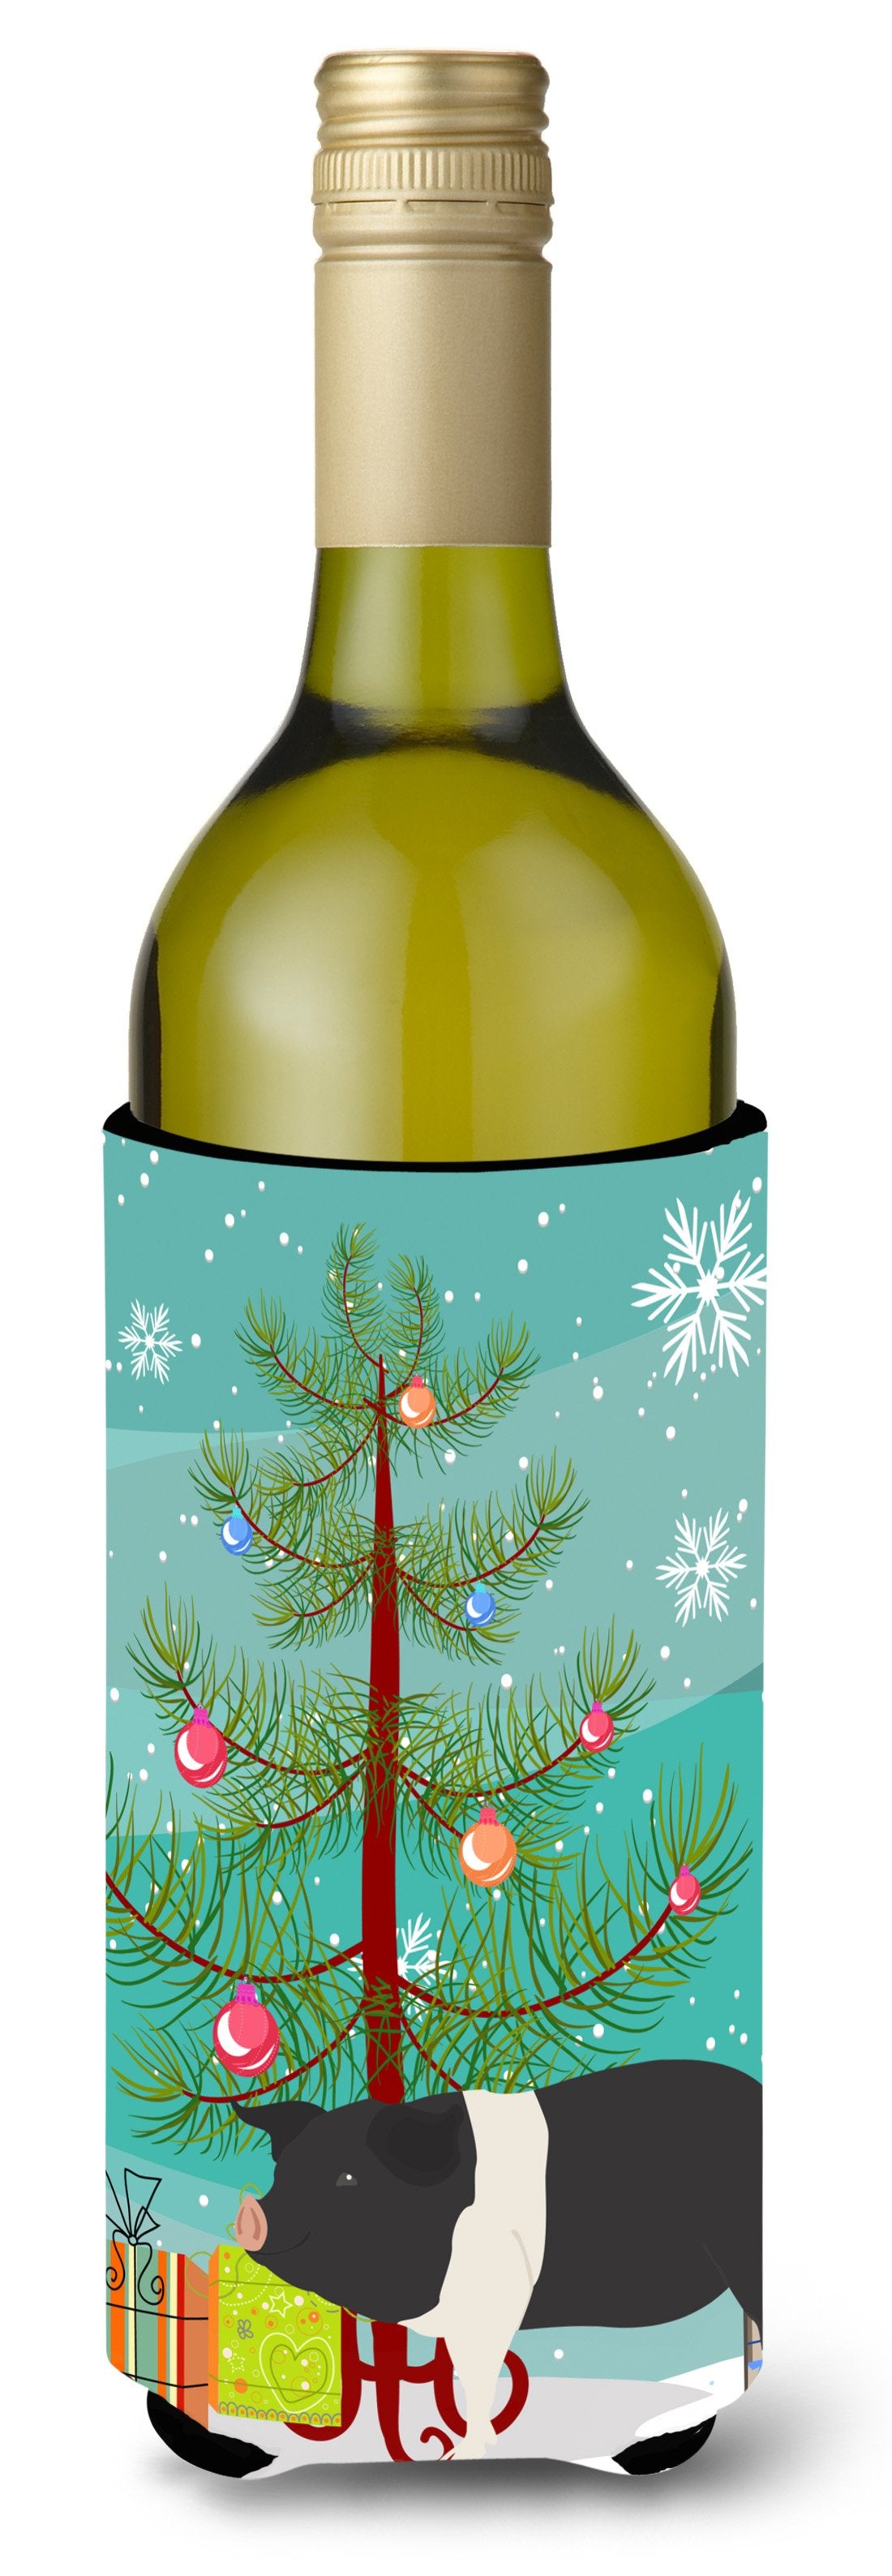 Hampshire Pig Christmas Wine Bottle Beverge Insulator Hugger BB9306LITERK by Caroline's Treasures